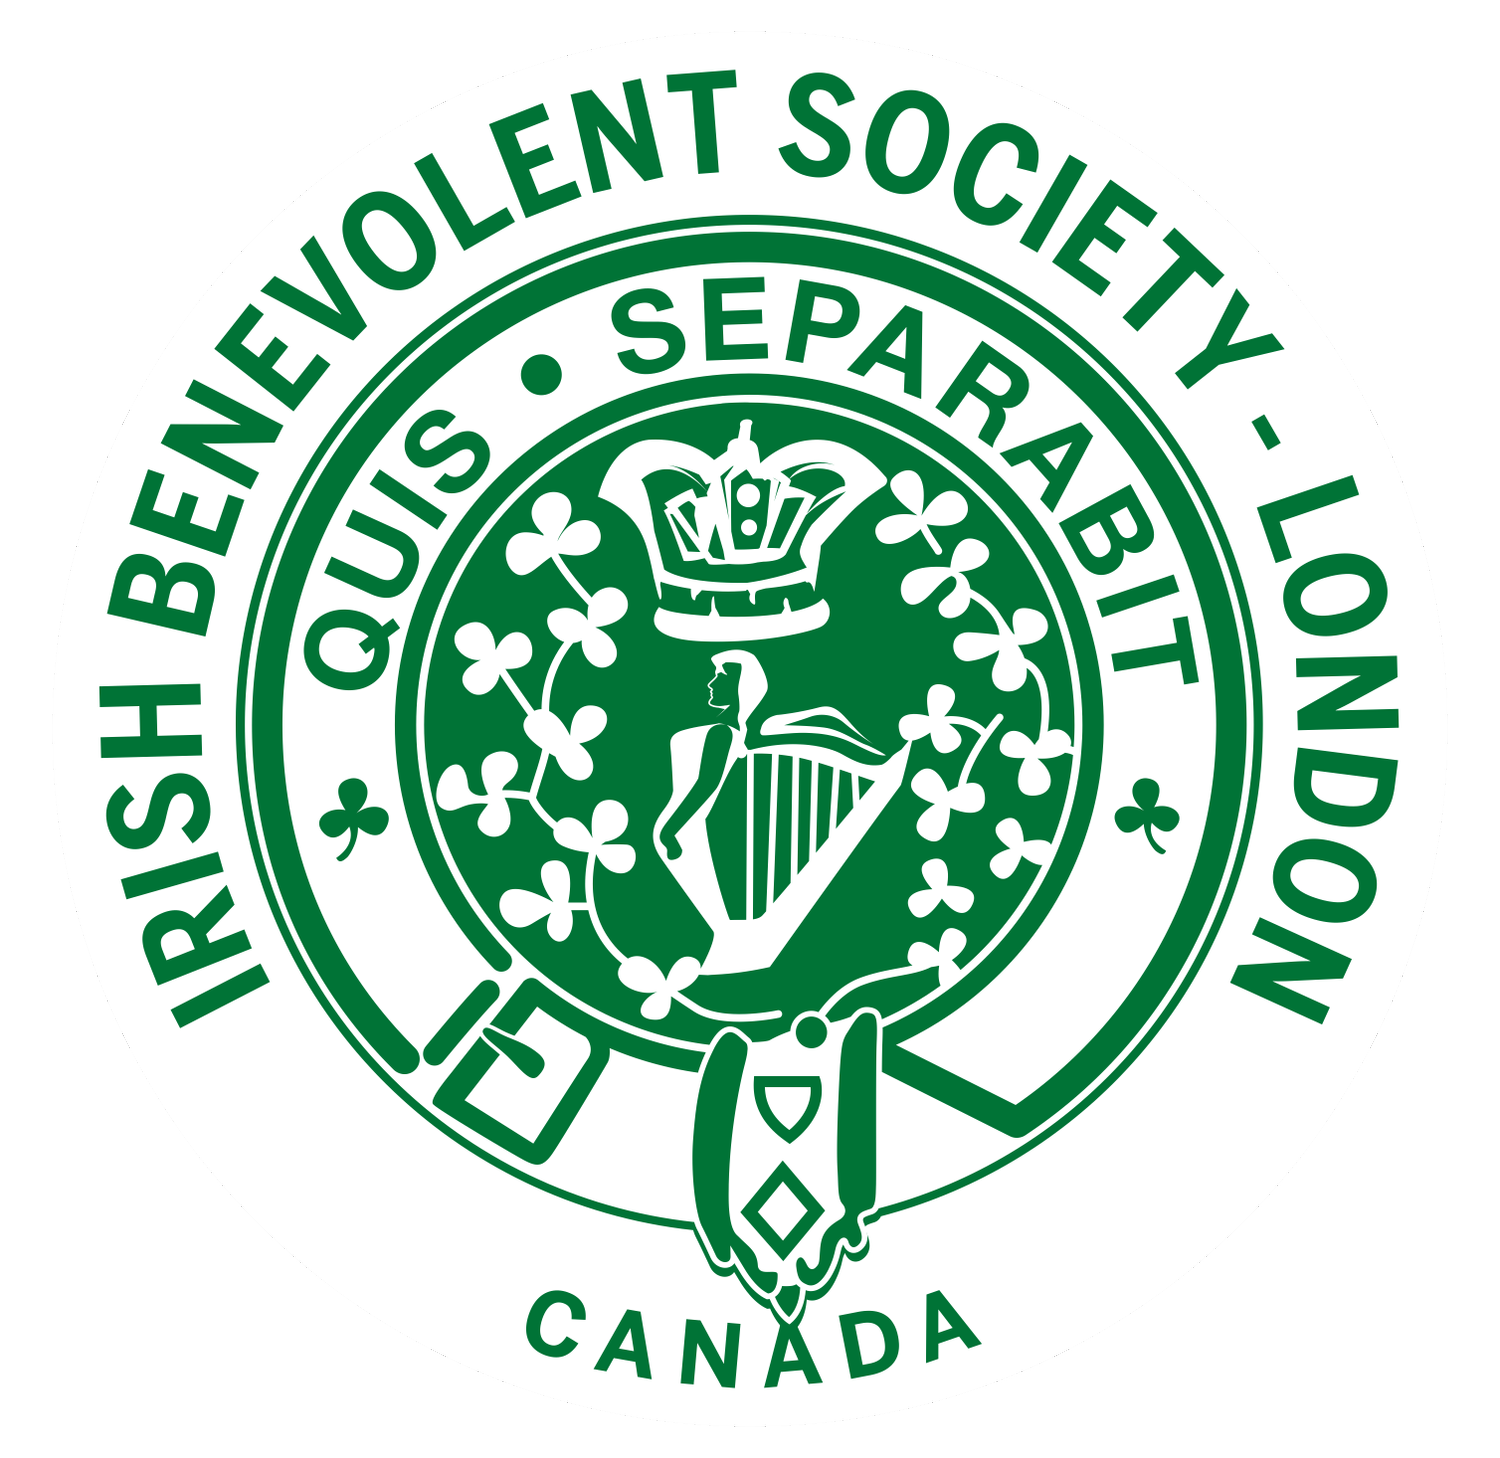 Irish Benevolent Society